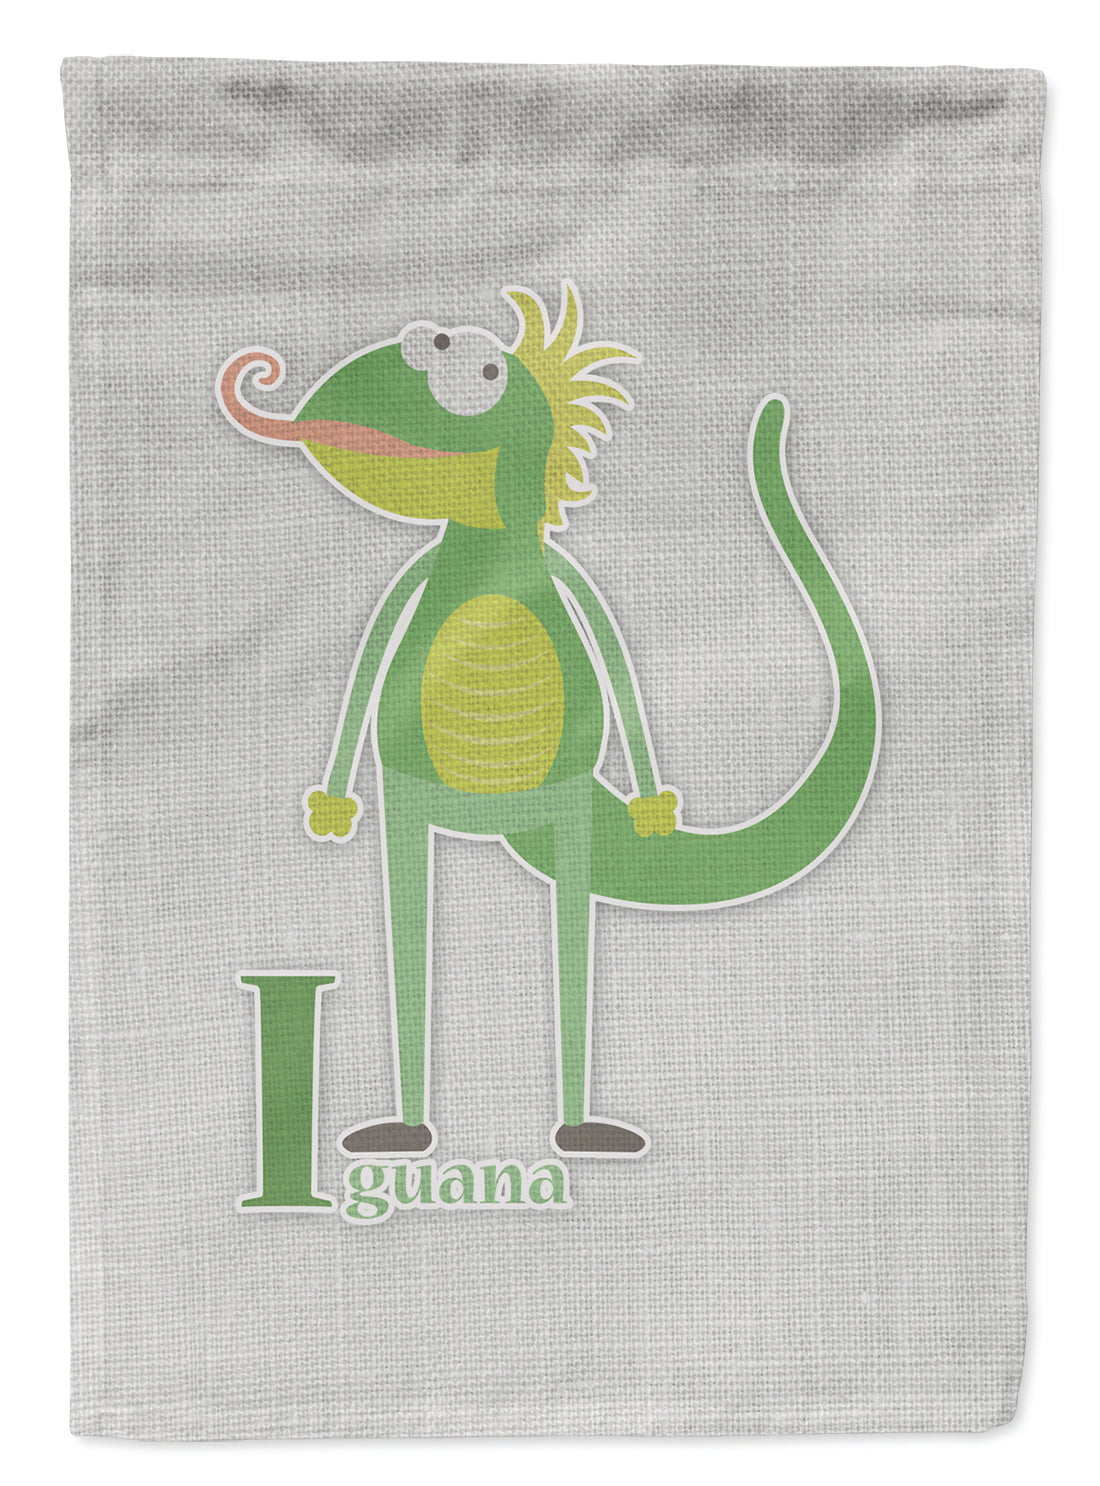 Alphabet I for Iguana Flag Garden Size BB5734GF  the-store.com.